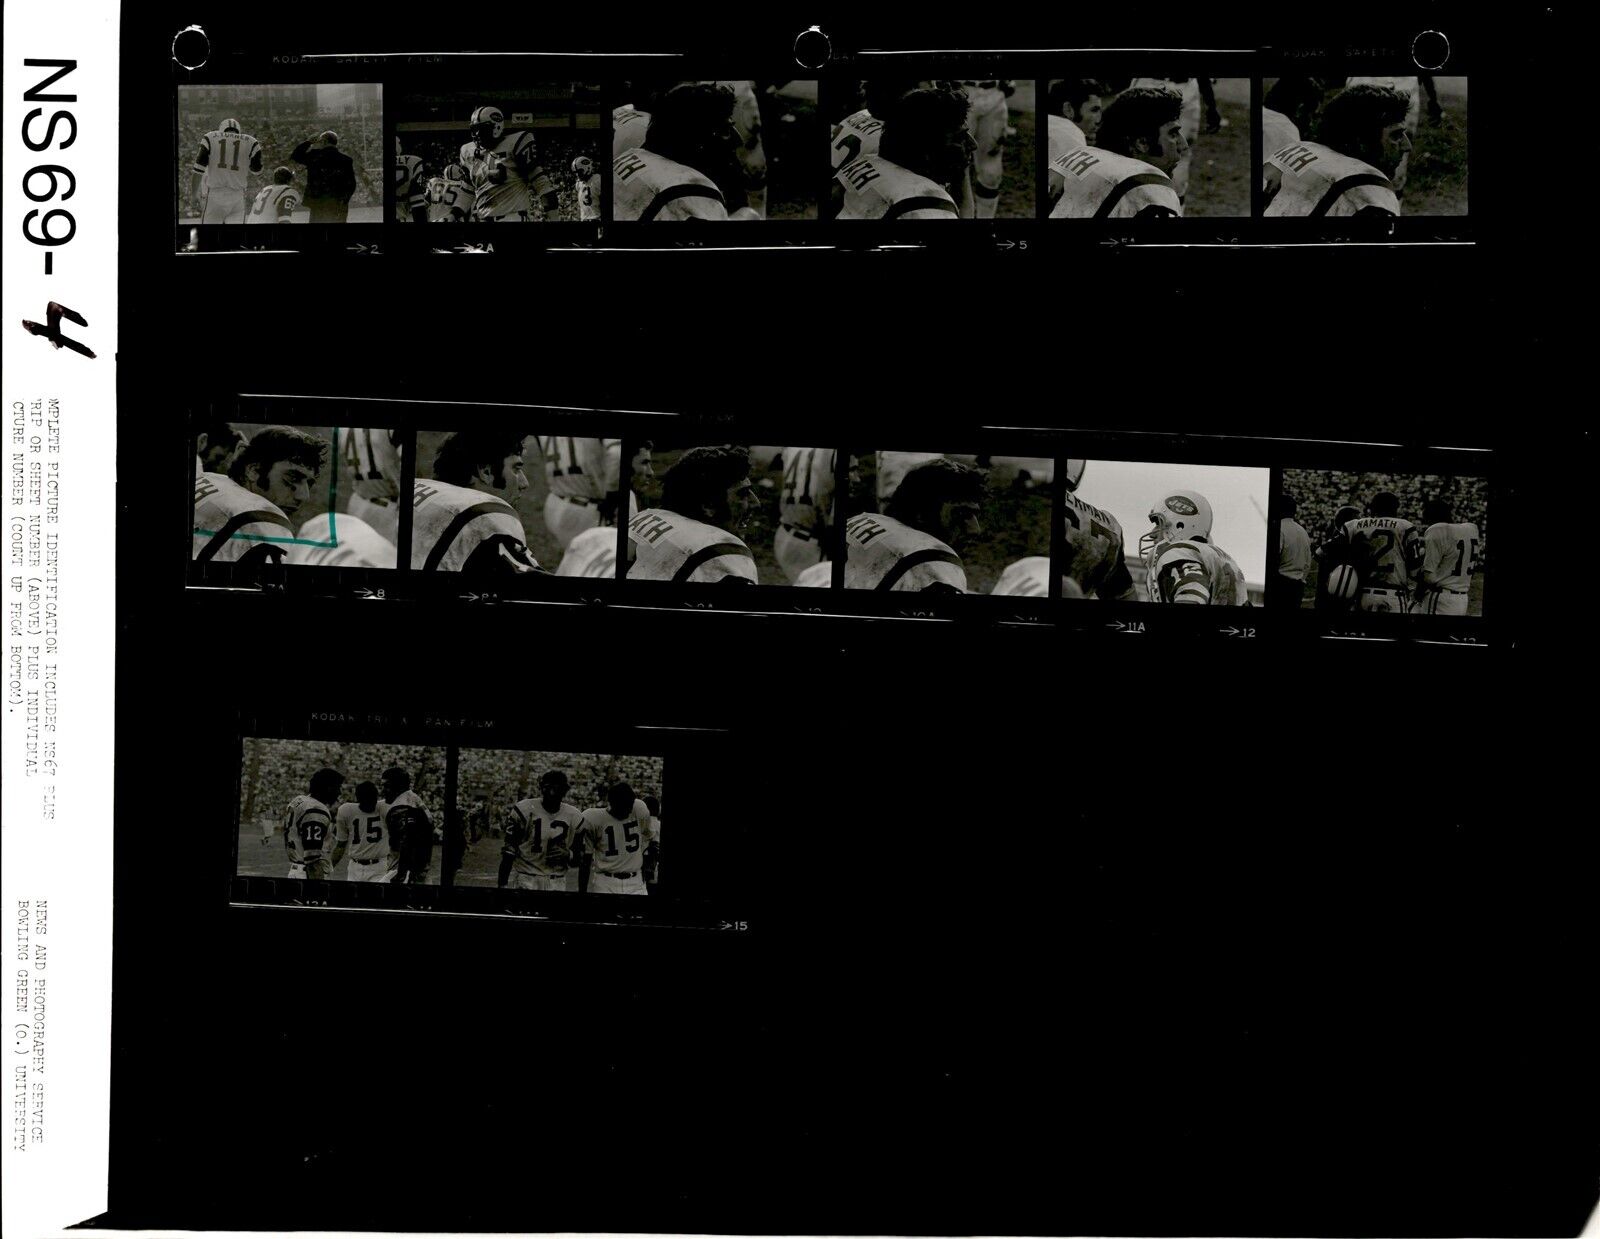 LD345 1969 Original Contact Sheet Photo CIN BENGALS vs NEW YORK JETS JOE NAMATH